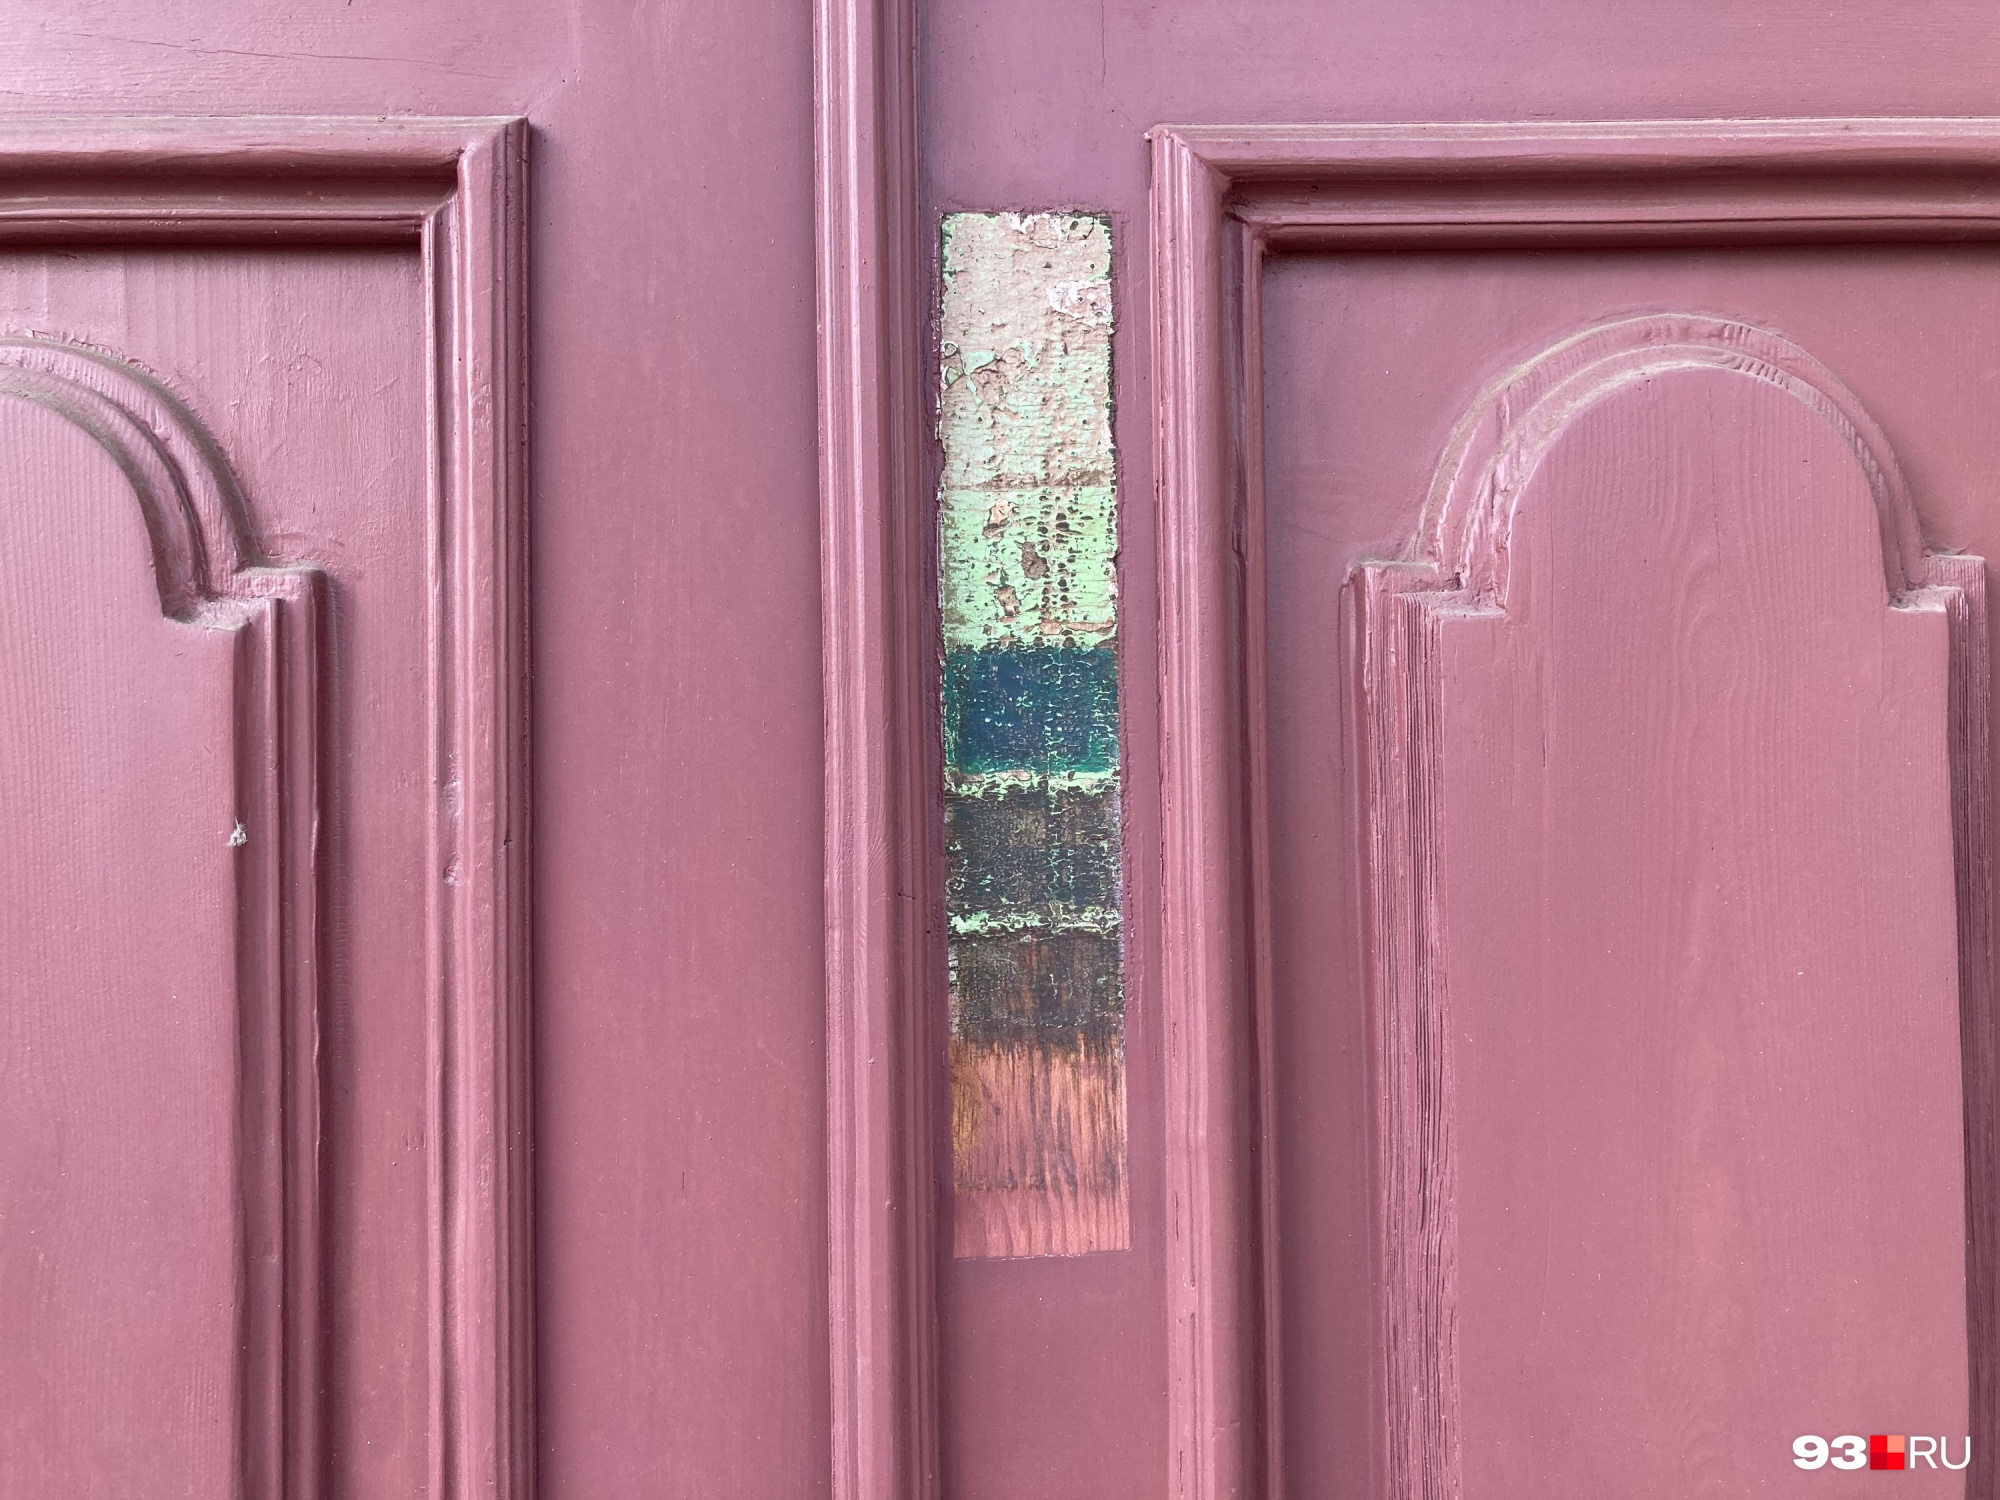 В процессе расчистки удалось найти следы семи слоев краски и понять, в какой цвет дверь была выкрашена изначально